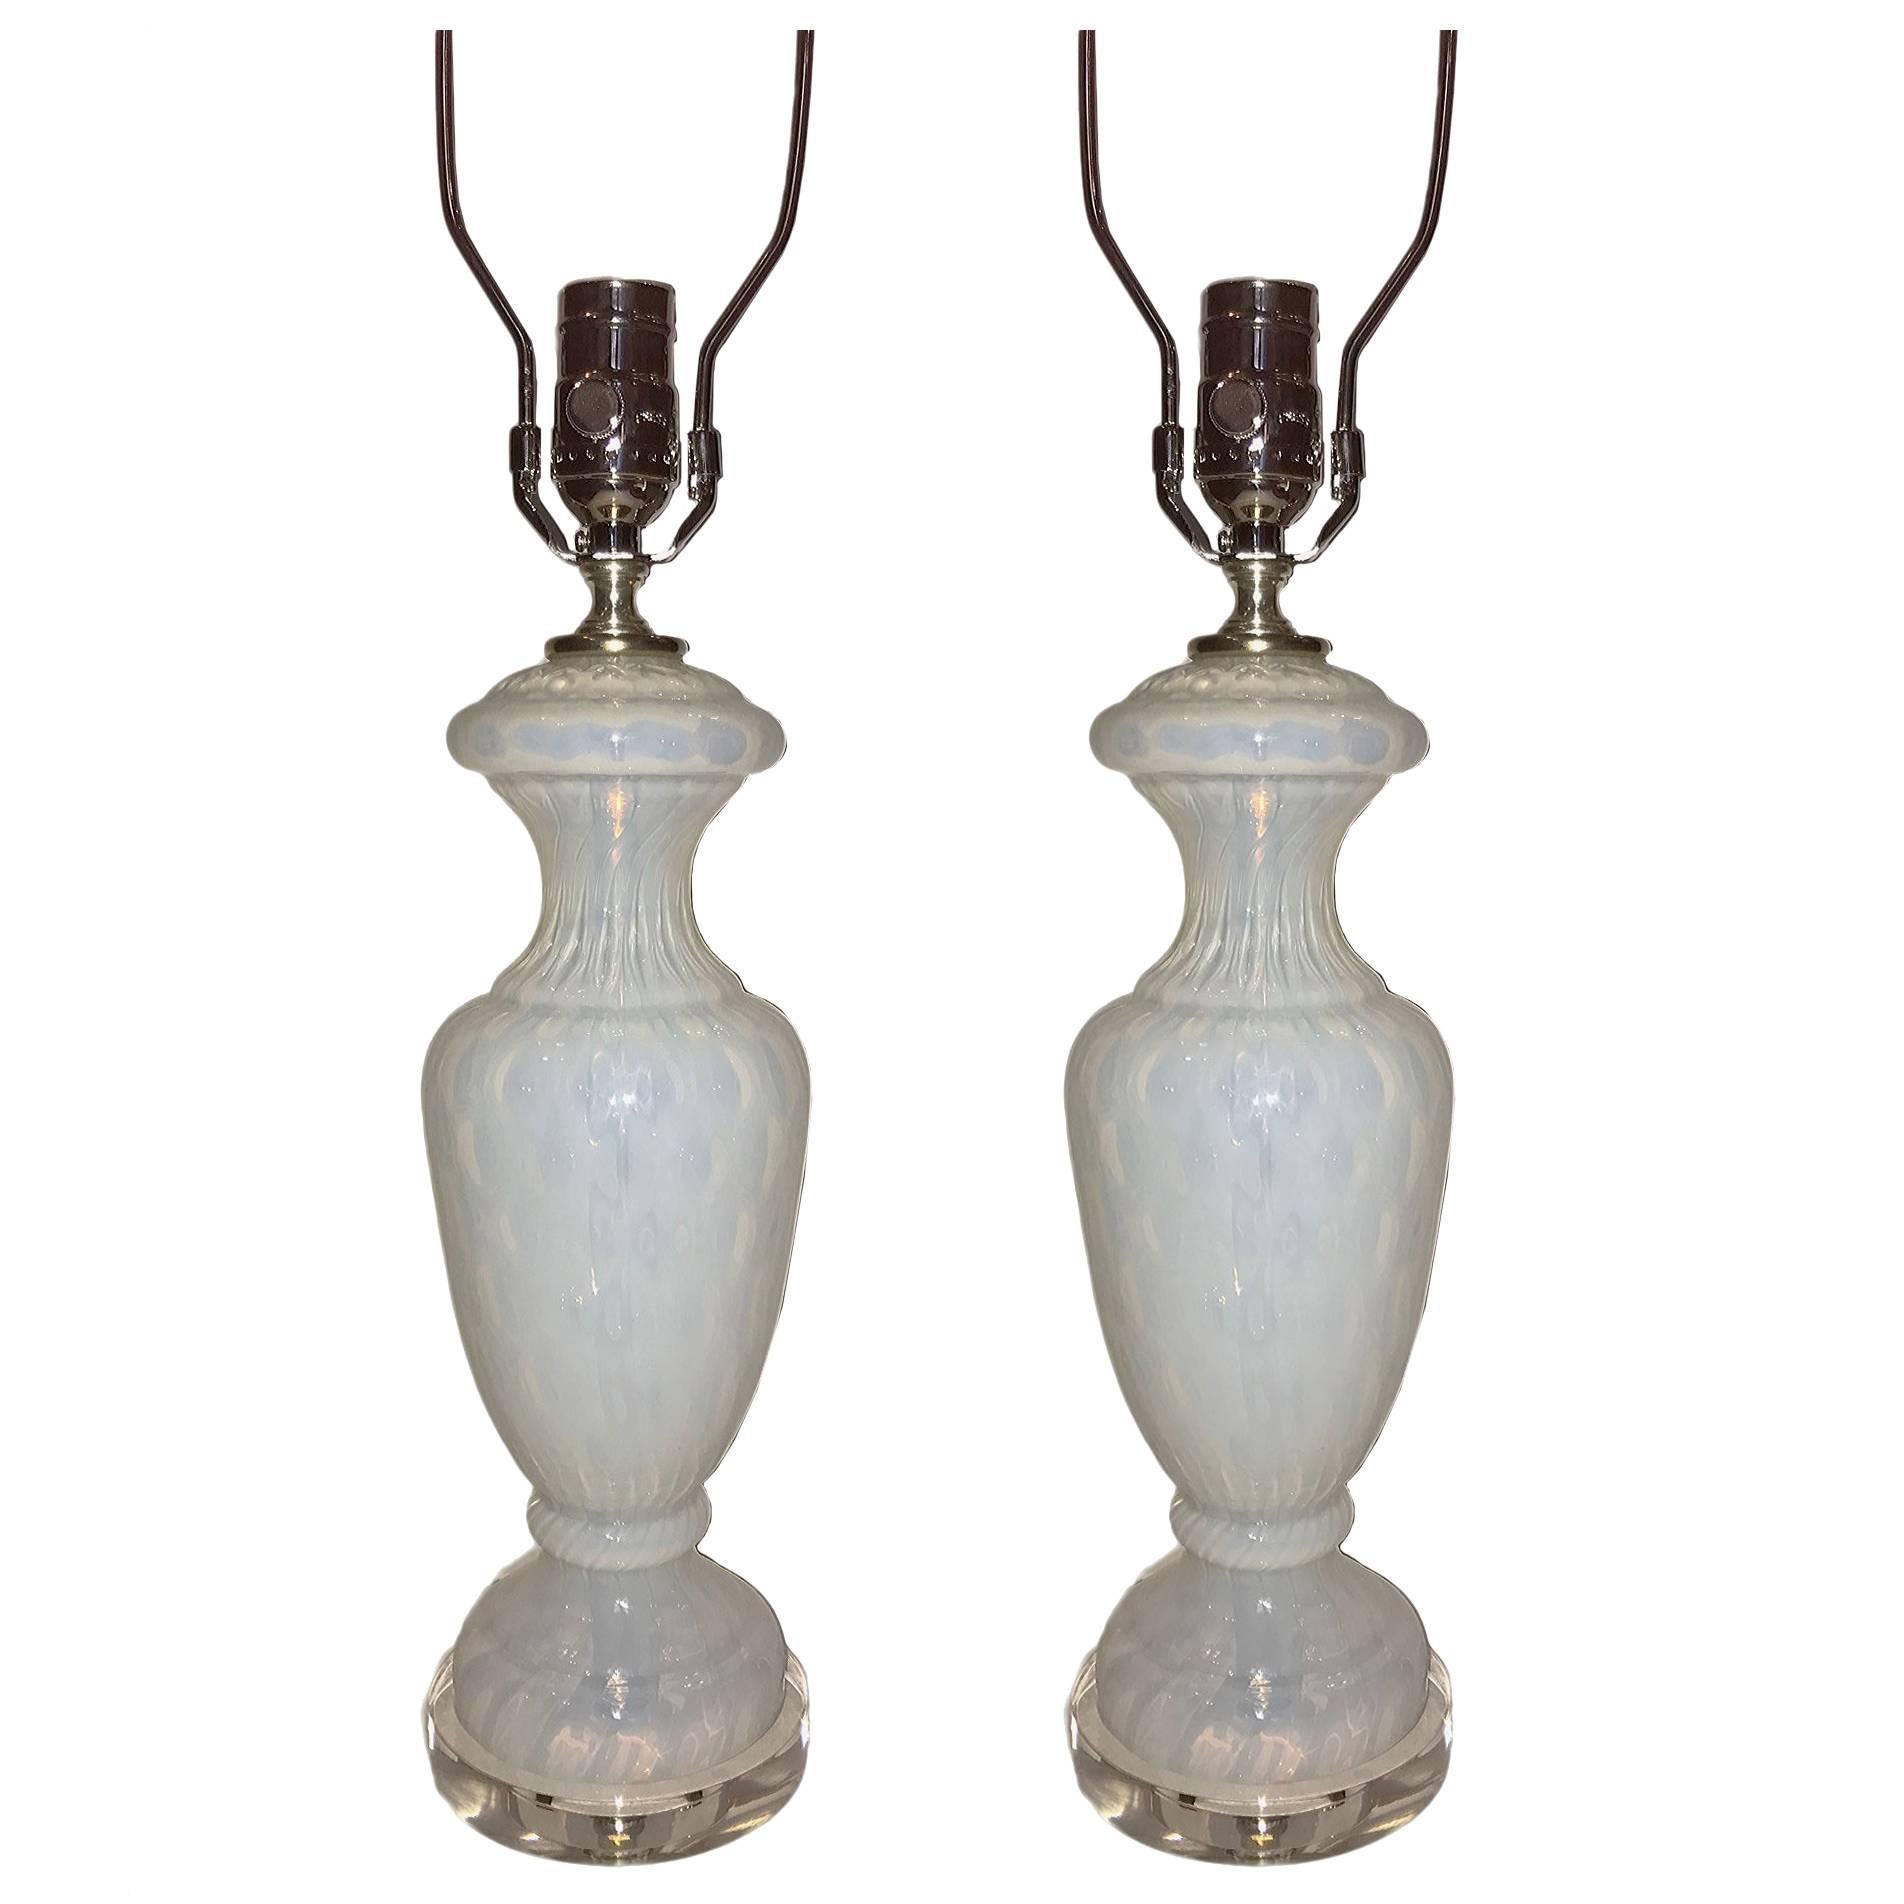 Paire de lampes de table en verre opalin français des années 1940 montées sur des bases en lucite.

Mesures :
Hauteur du corps : 13.75" 
Hauteur jusqu'au support de l'abat-jour : 22